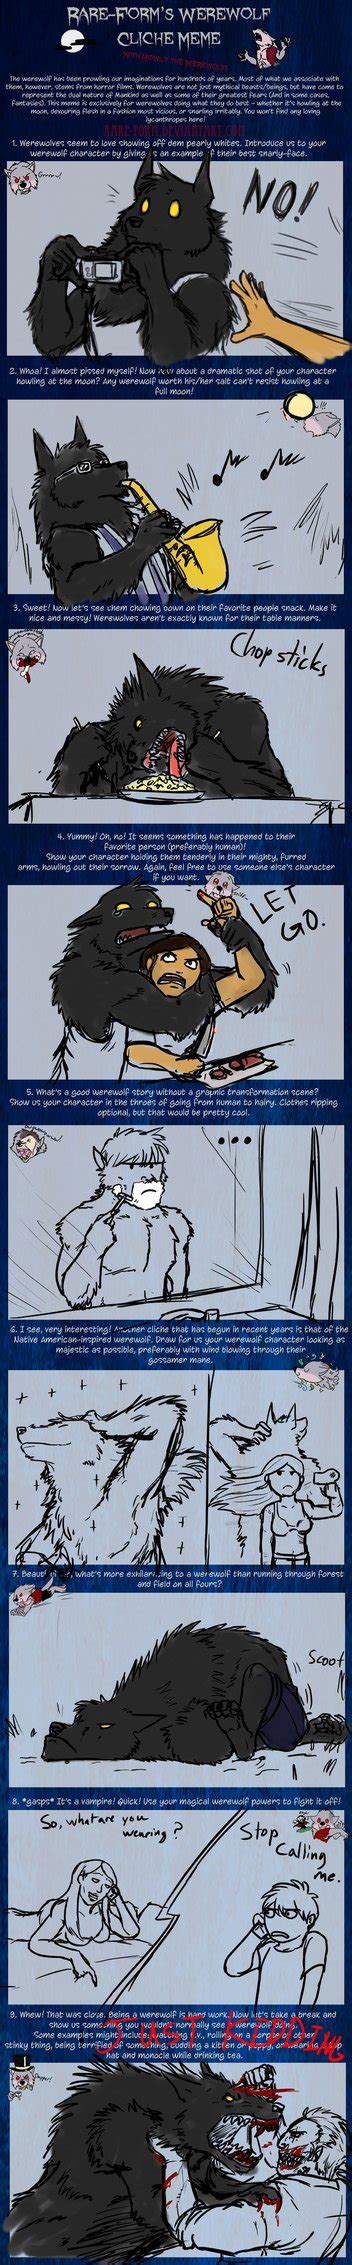 The Werewolf Cliche Meme By Pandadrake On Deviantart